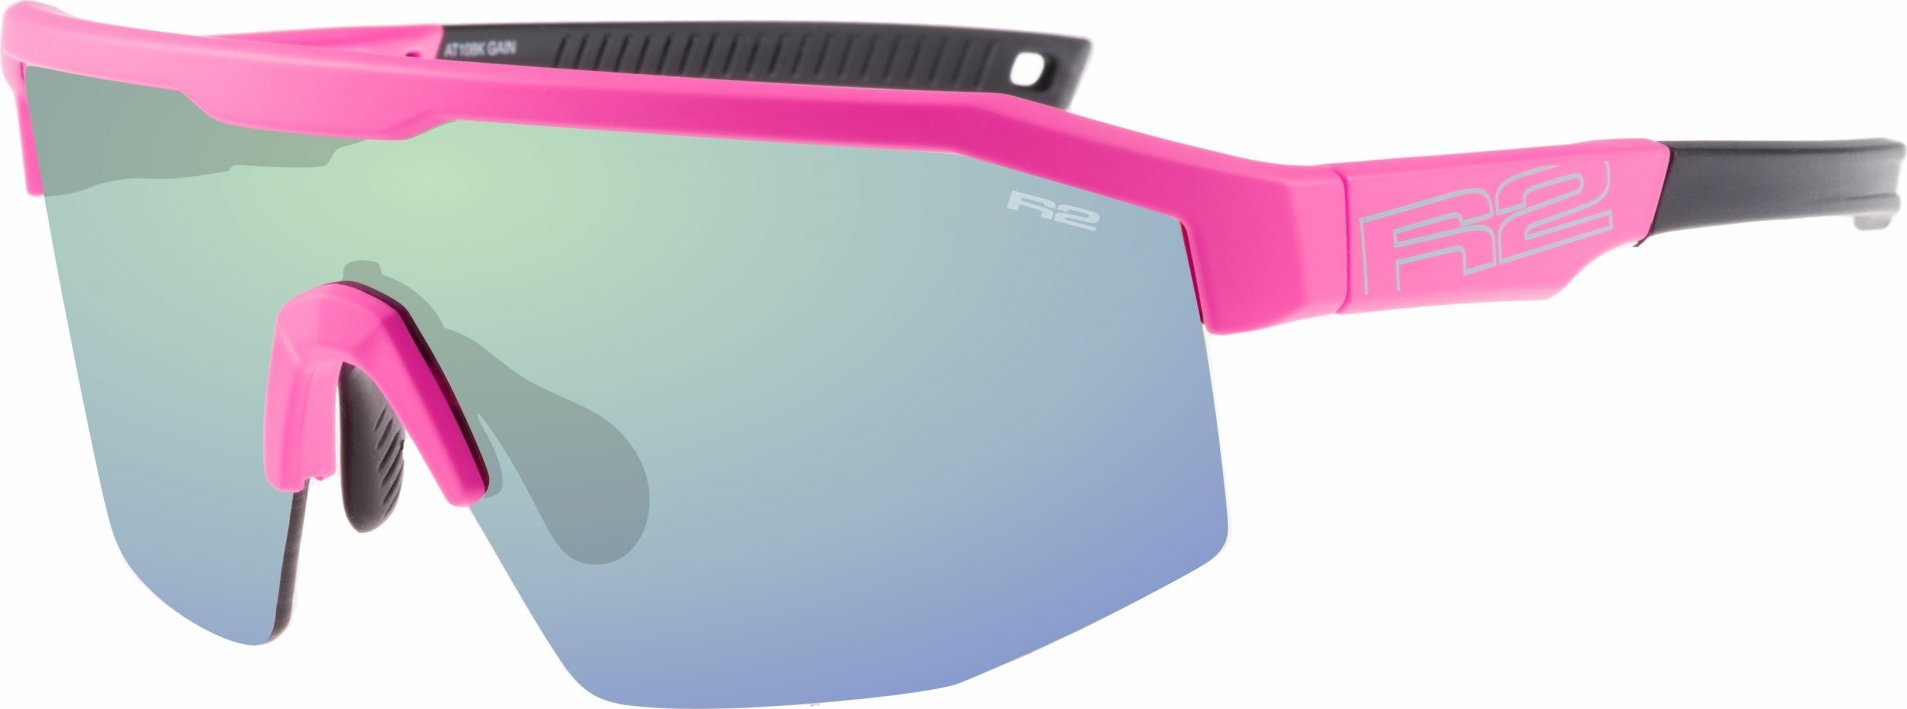 HD sportovní sluneční brýle R2 Gain růžové